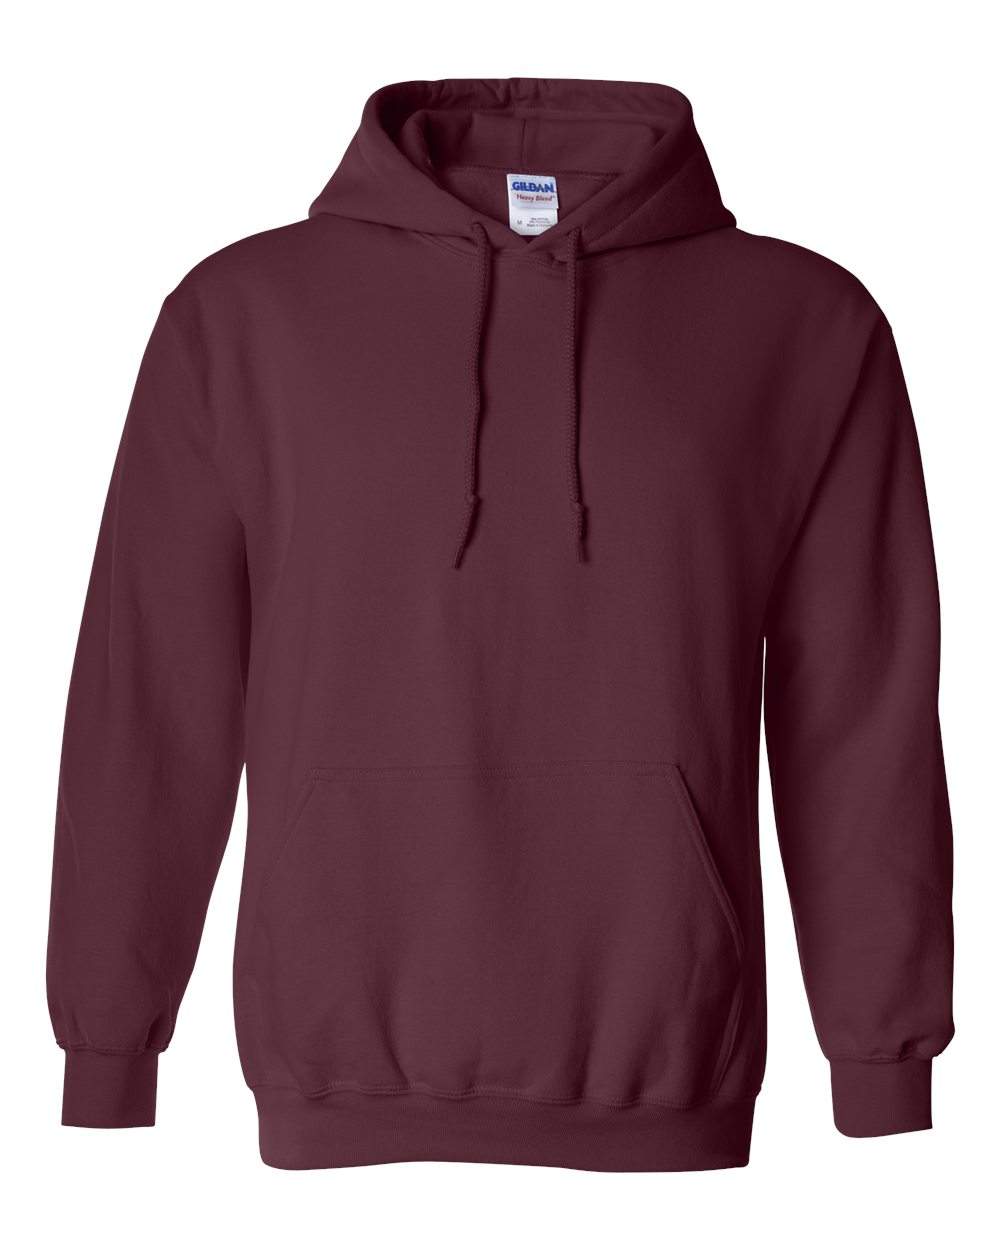 Gildan - Heavy Blend™ Hooded Sweatshirt - 18500 - Budget Promotion Hoodie  CA$ 24.54